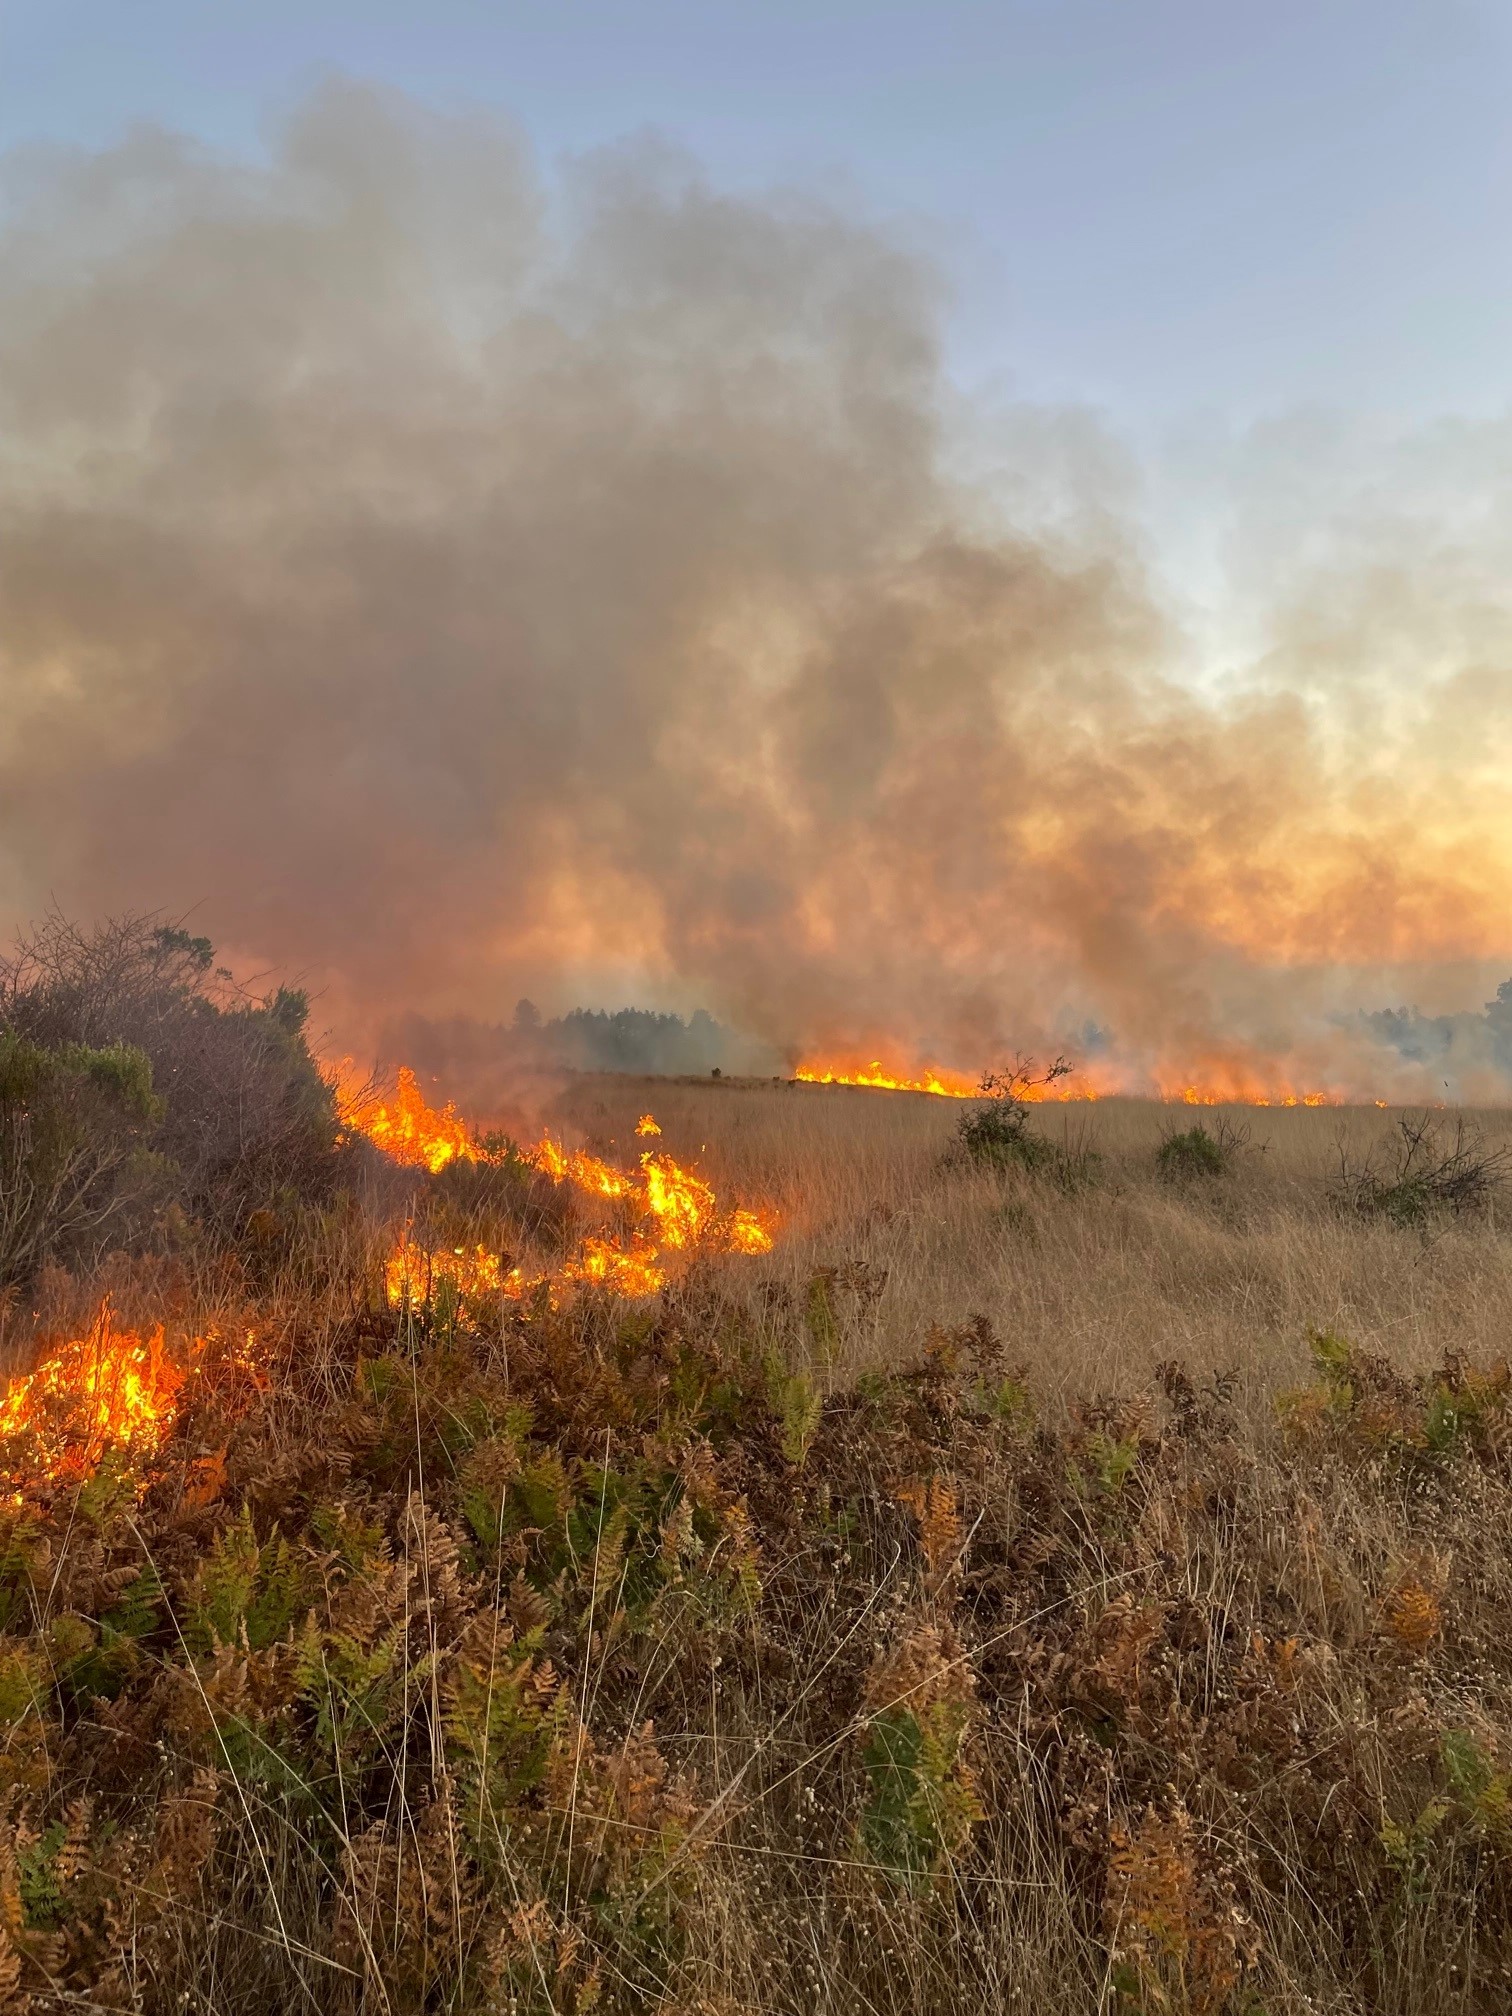 Smoke and flames as prescribed fire burns grassland